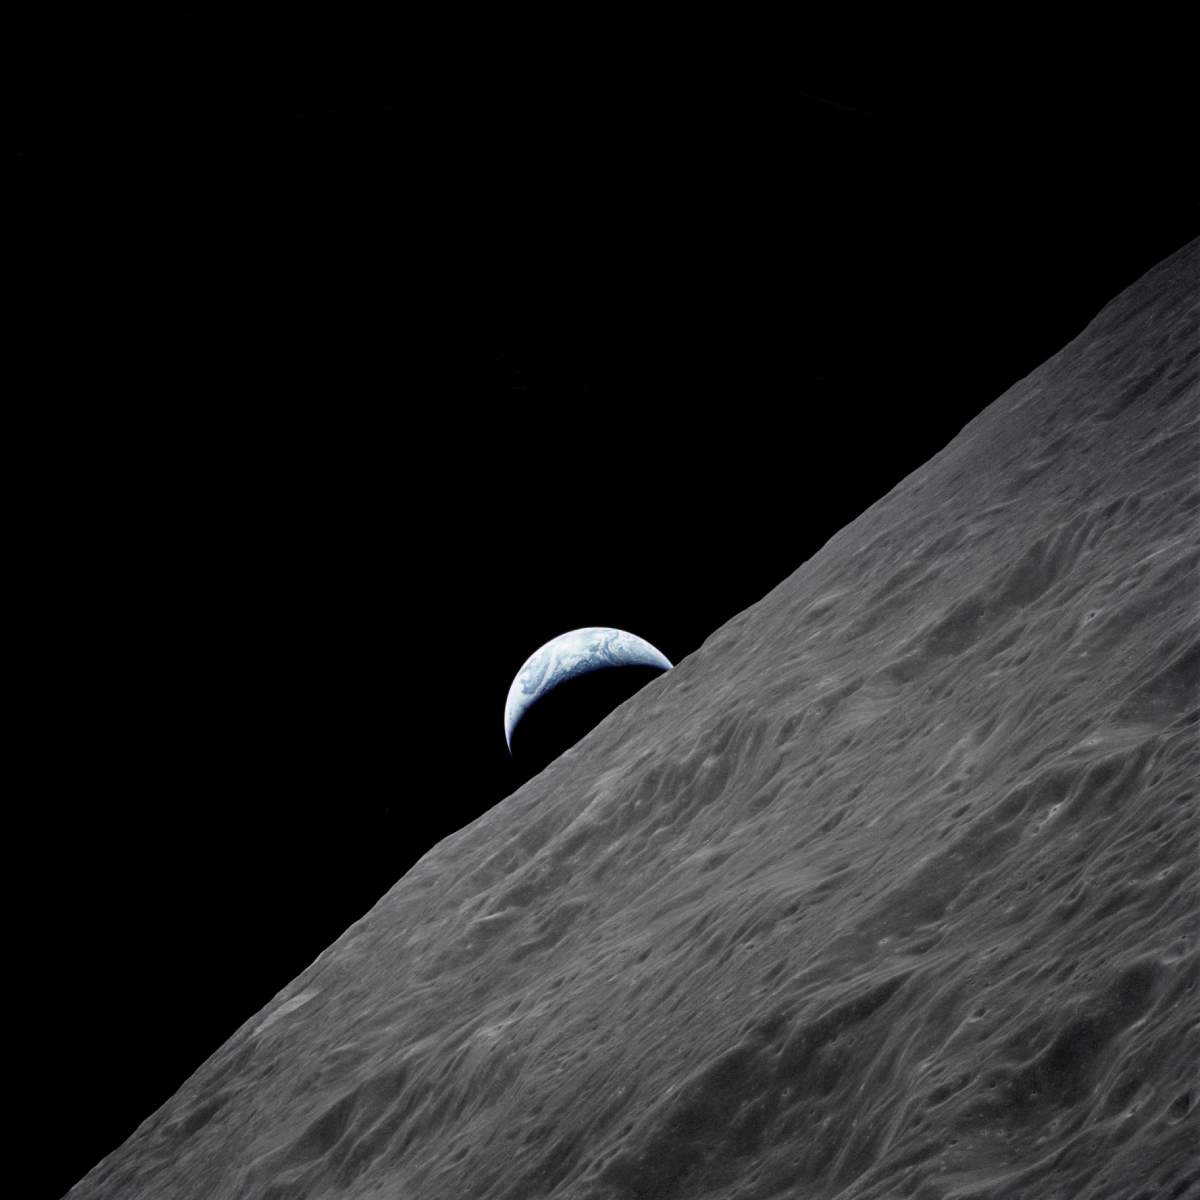 Crescent Earth rises above the lunar horizon - Apollo 17 photo